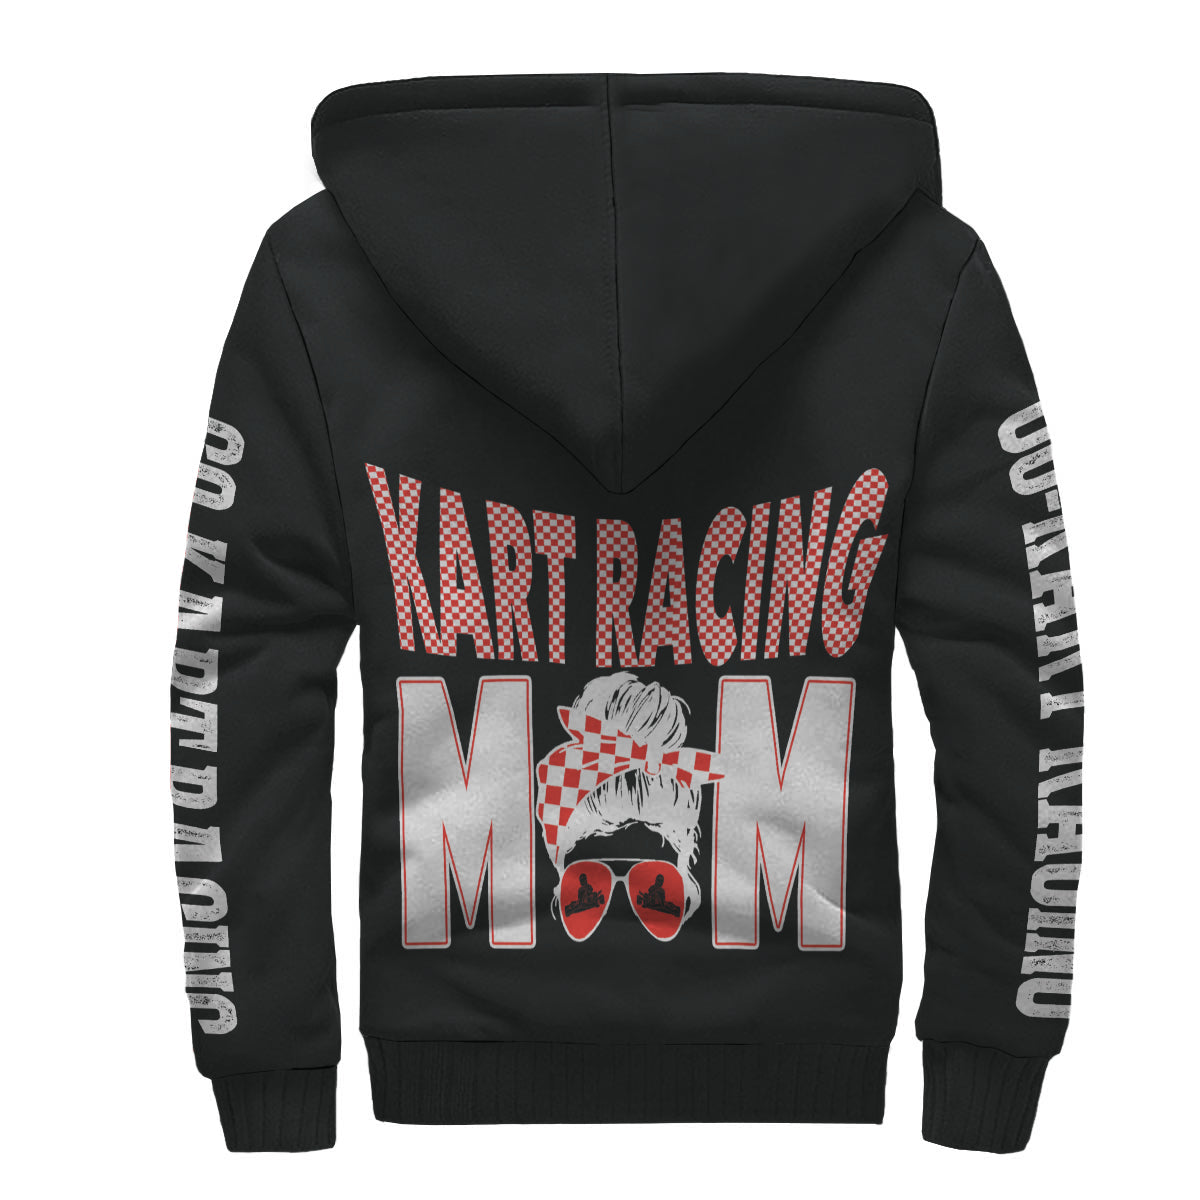 go-kart racing jacket